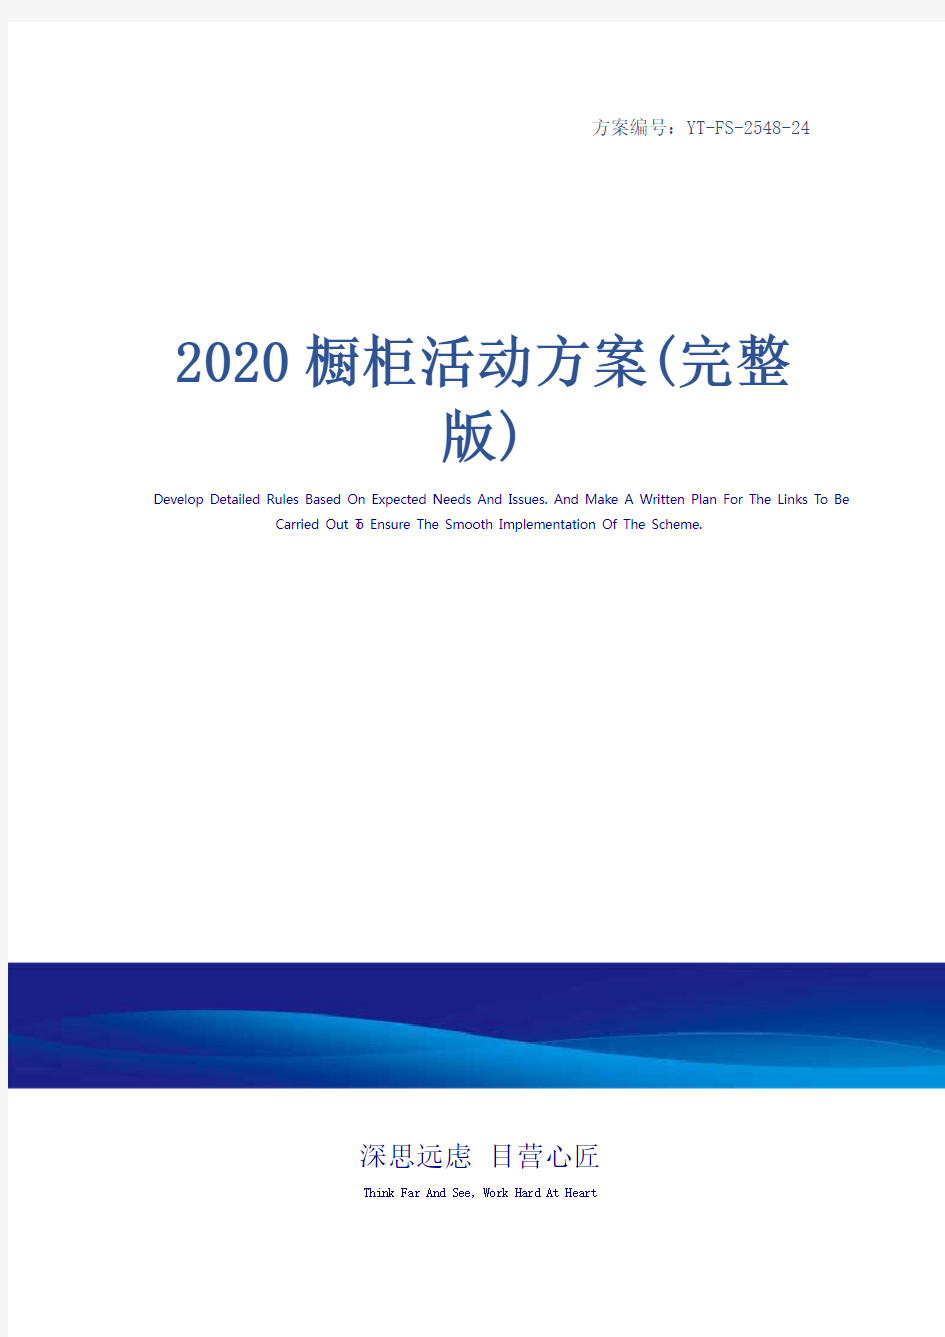 2020橱柜活动方案(完整版)